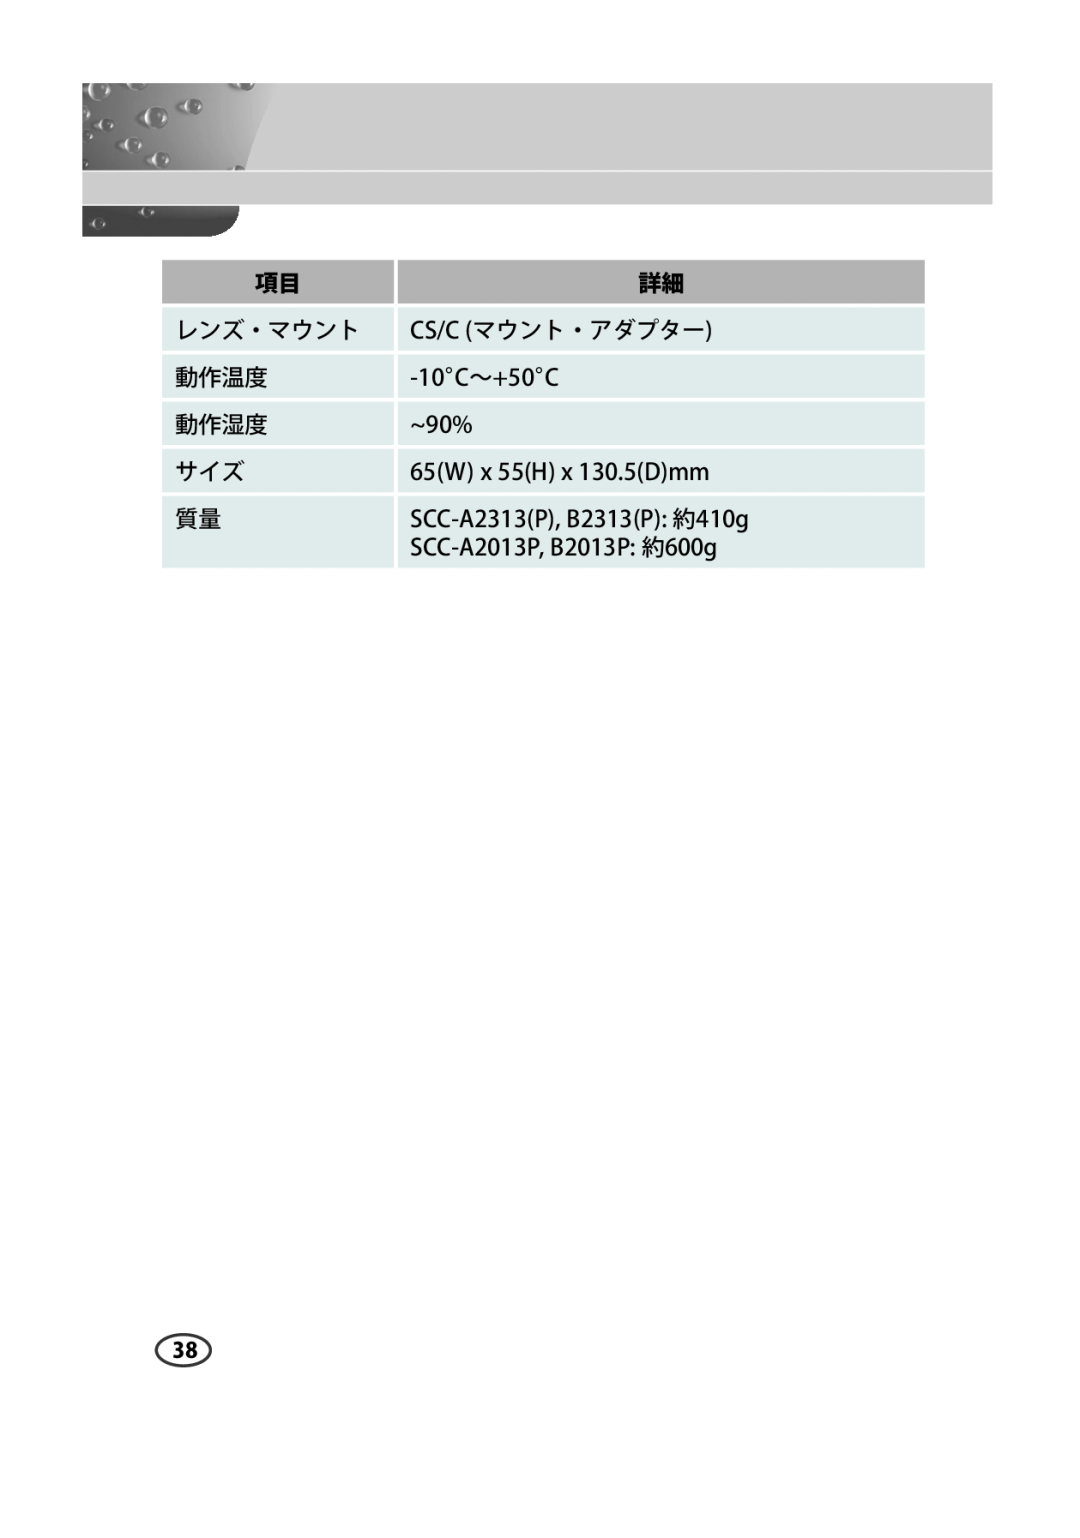 Samsung SCC-B2013P manual レンズ・マウント, Cs/C マウント・アダプター, 動作温度, 動作湿度, SCC-A2313P, B2313P 約410g, SCC-A2013P, B2013P 約600g 